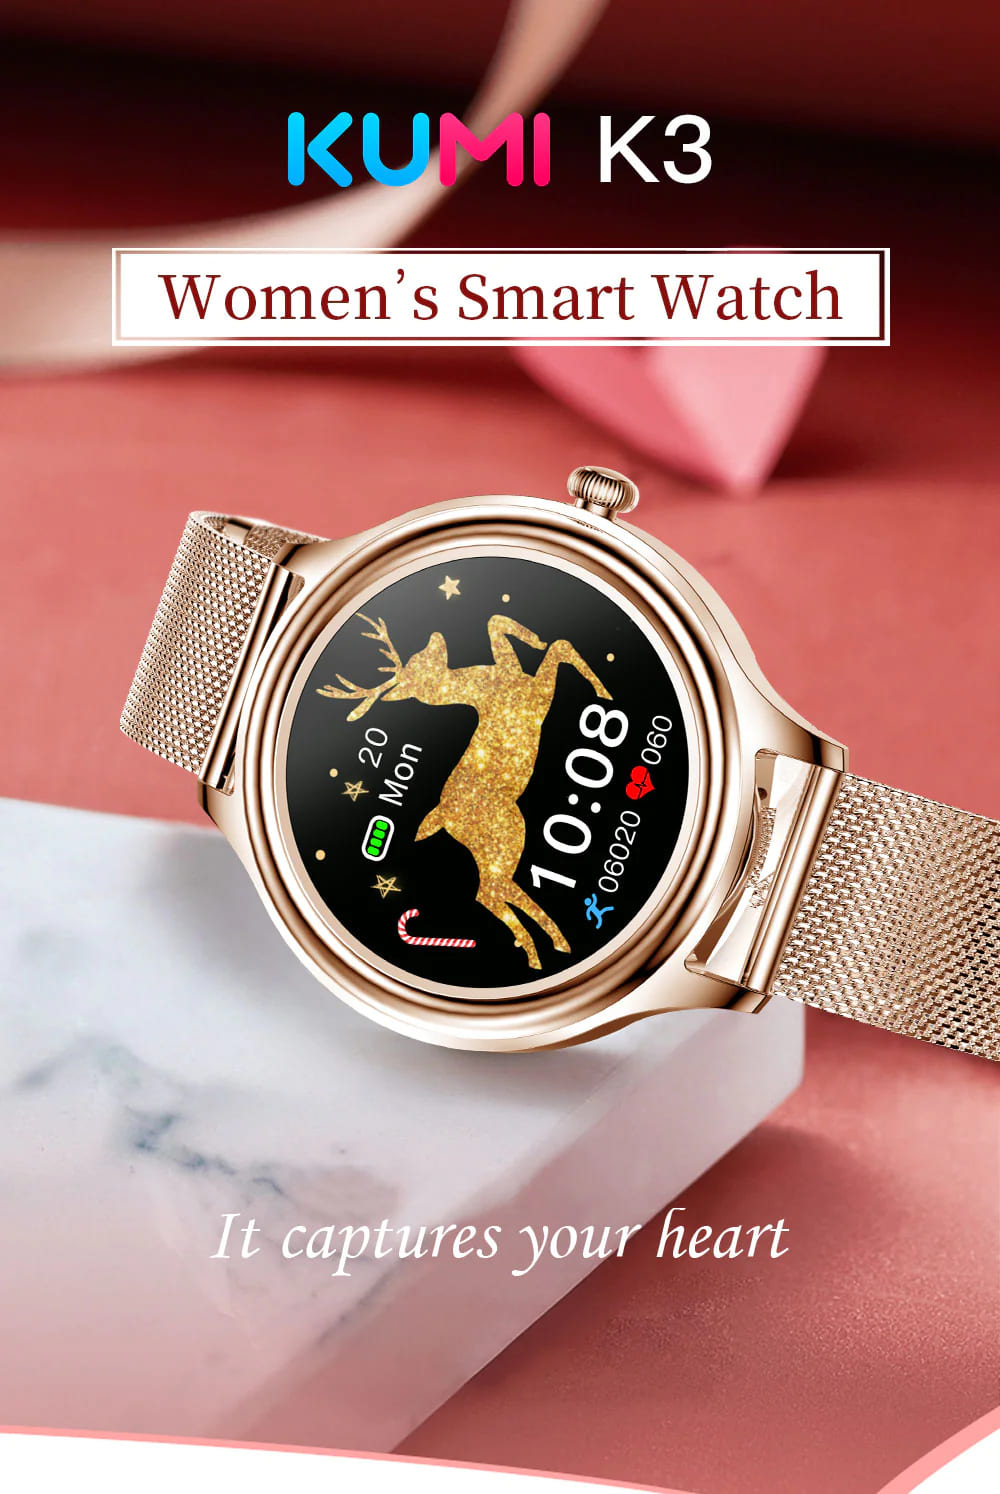 KUMI K3 Smart Watch review